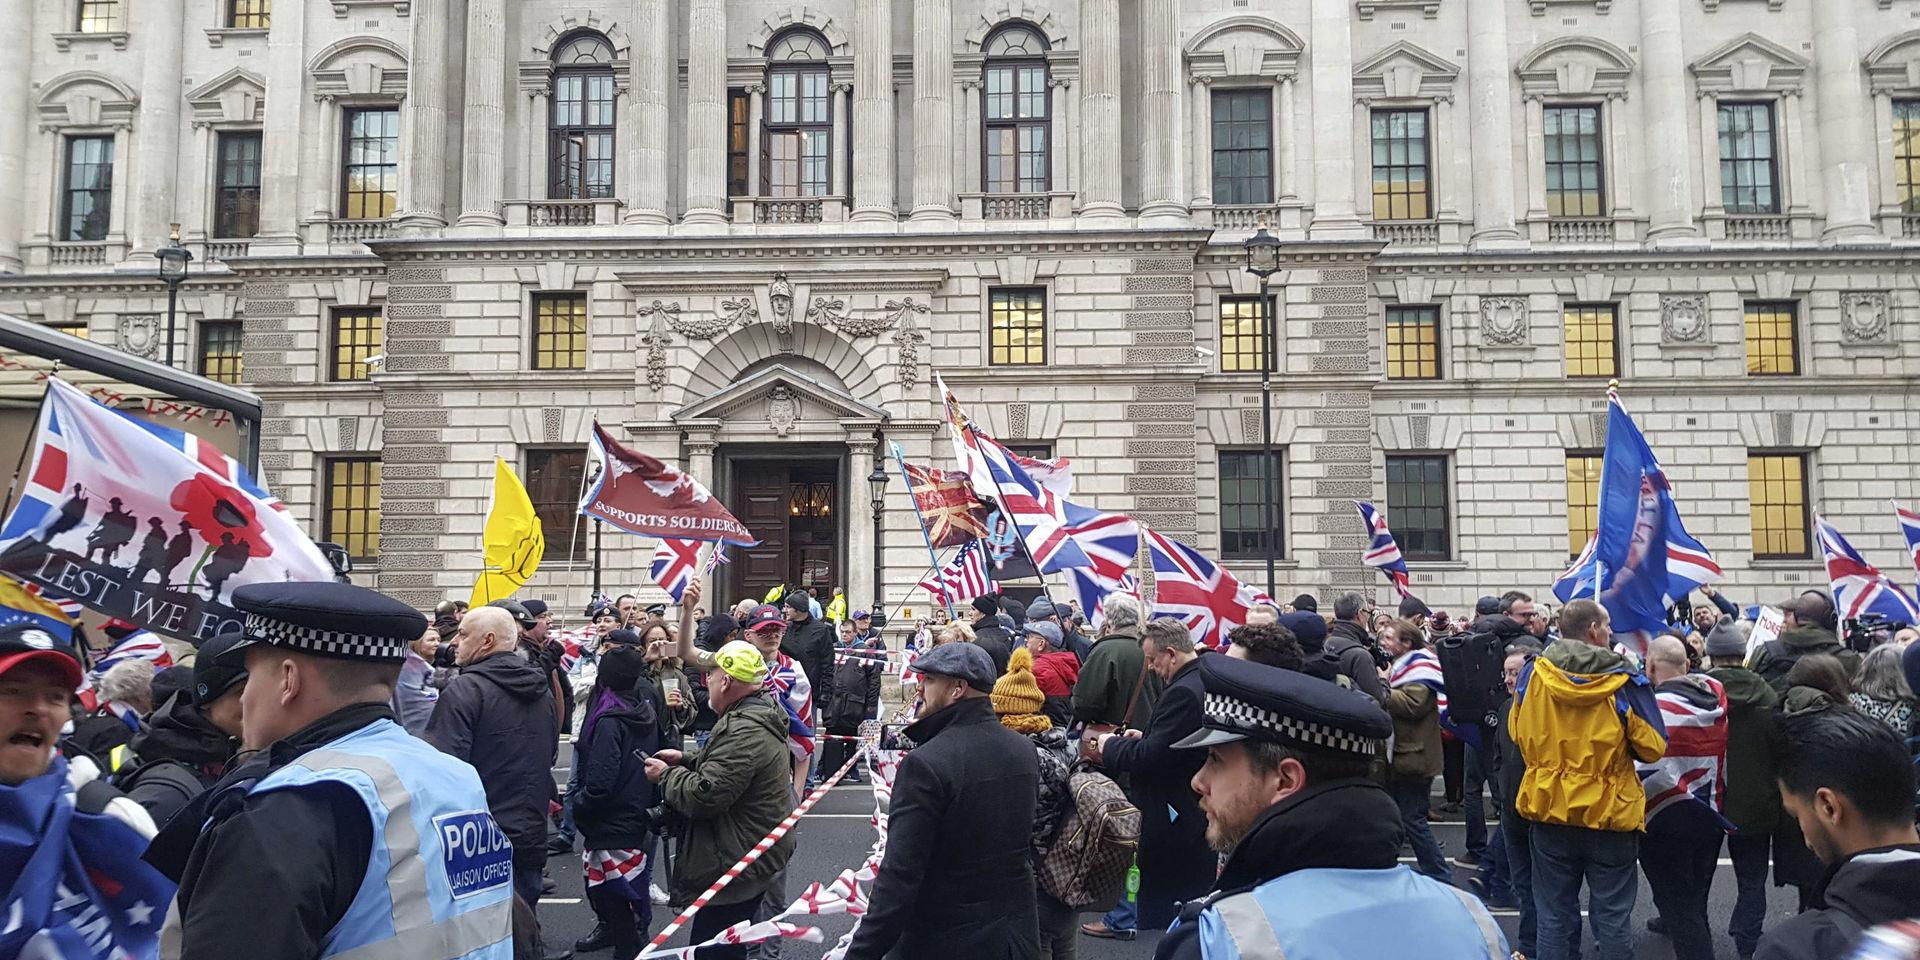 Samling vid Westminster i London. Här spelas musik och brittiska flaggor vajar.